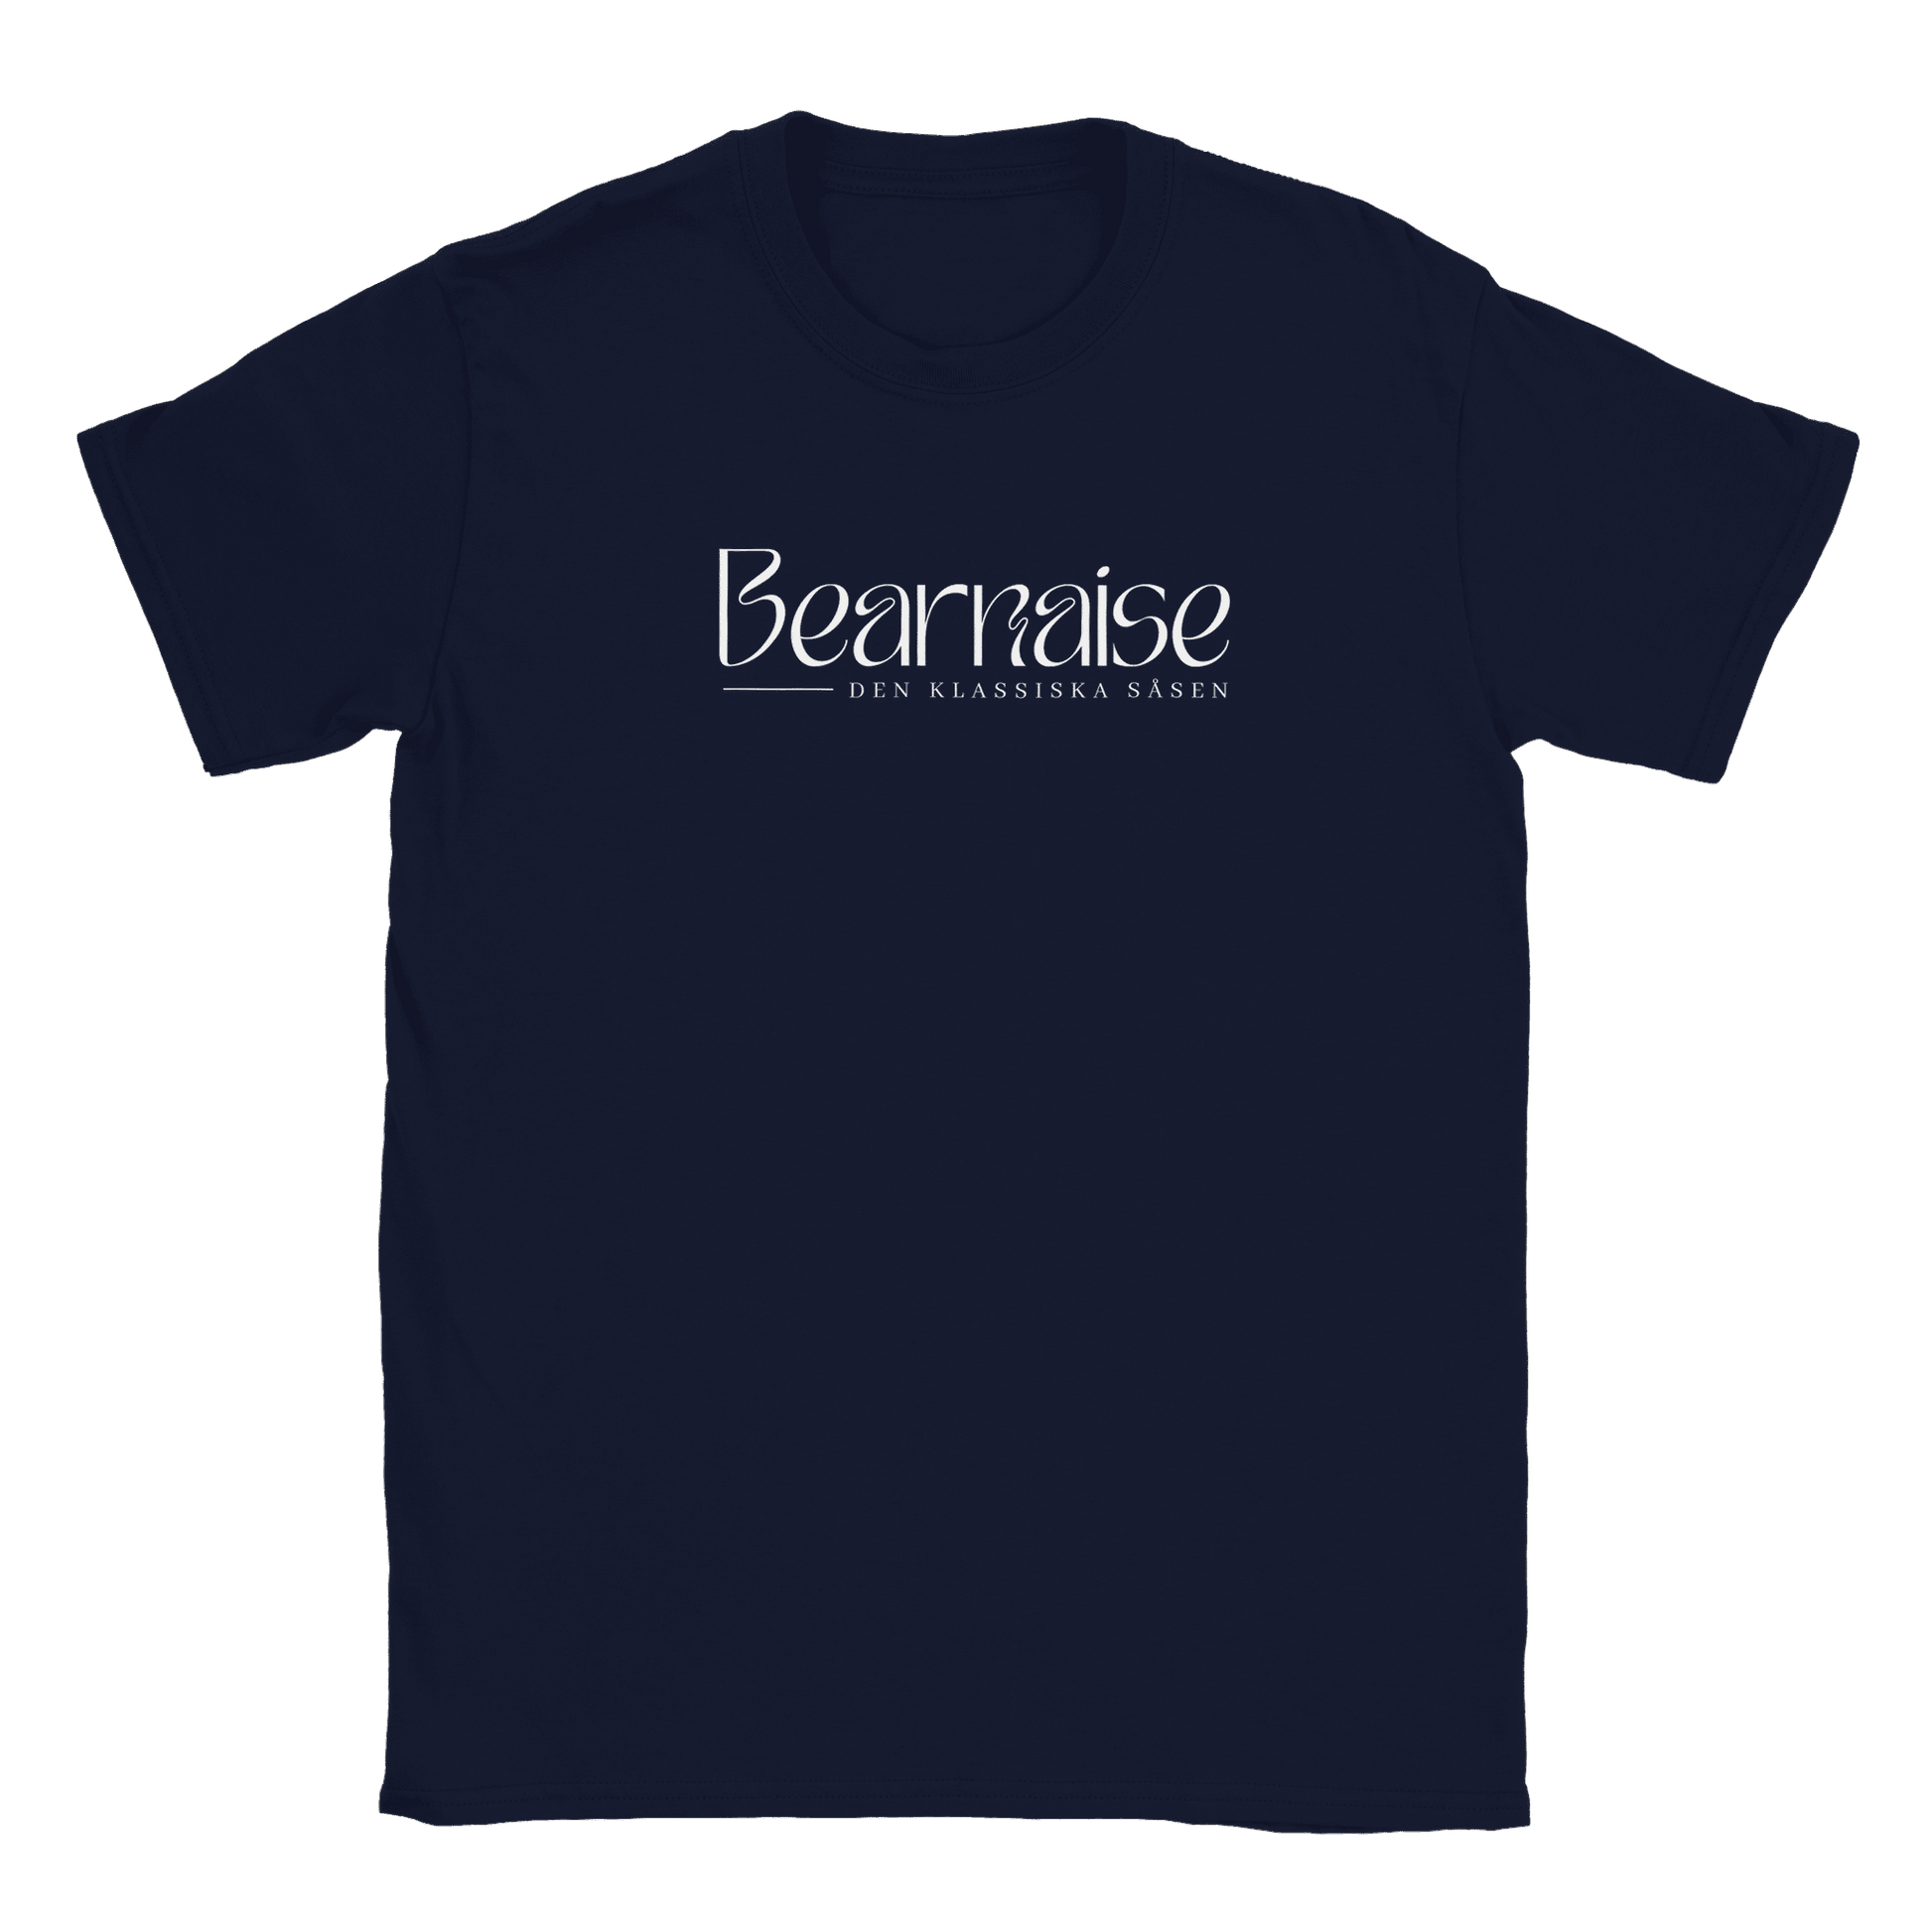 Bearnaisesås - T-shirt Navy